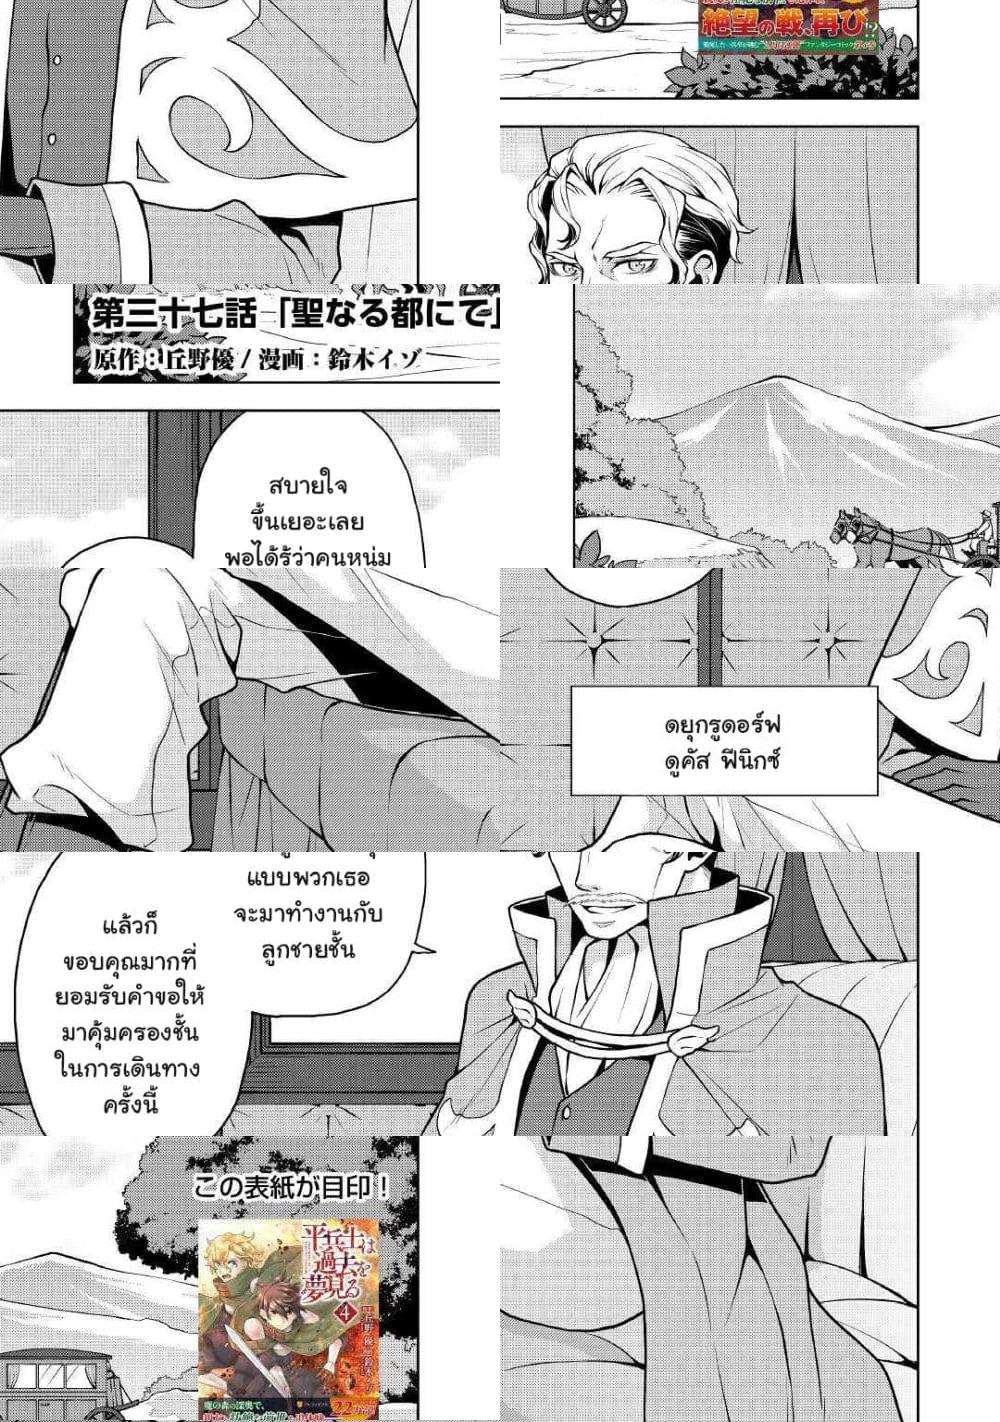 Hiraheishi wa Kako o Yumemiru - 37 - 2